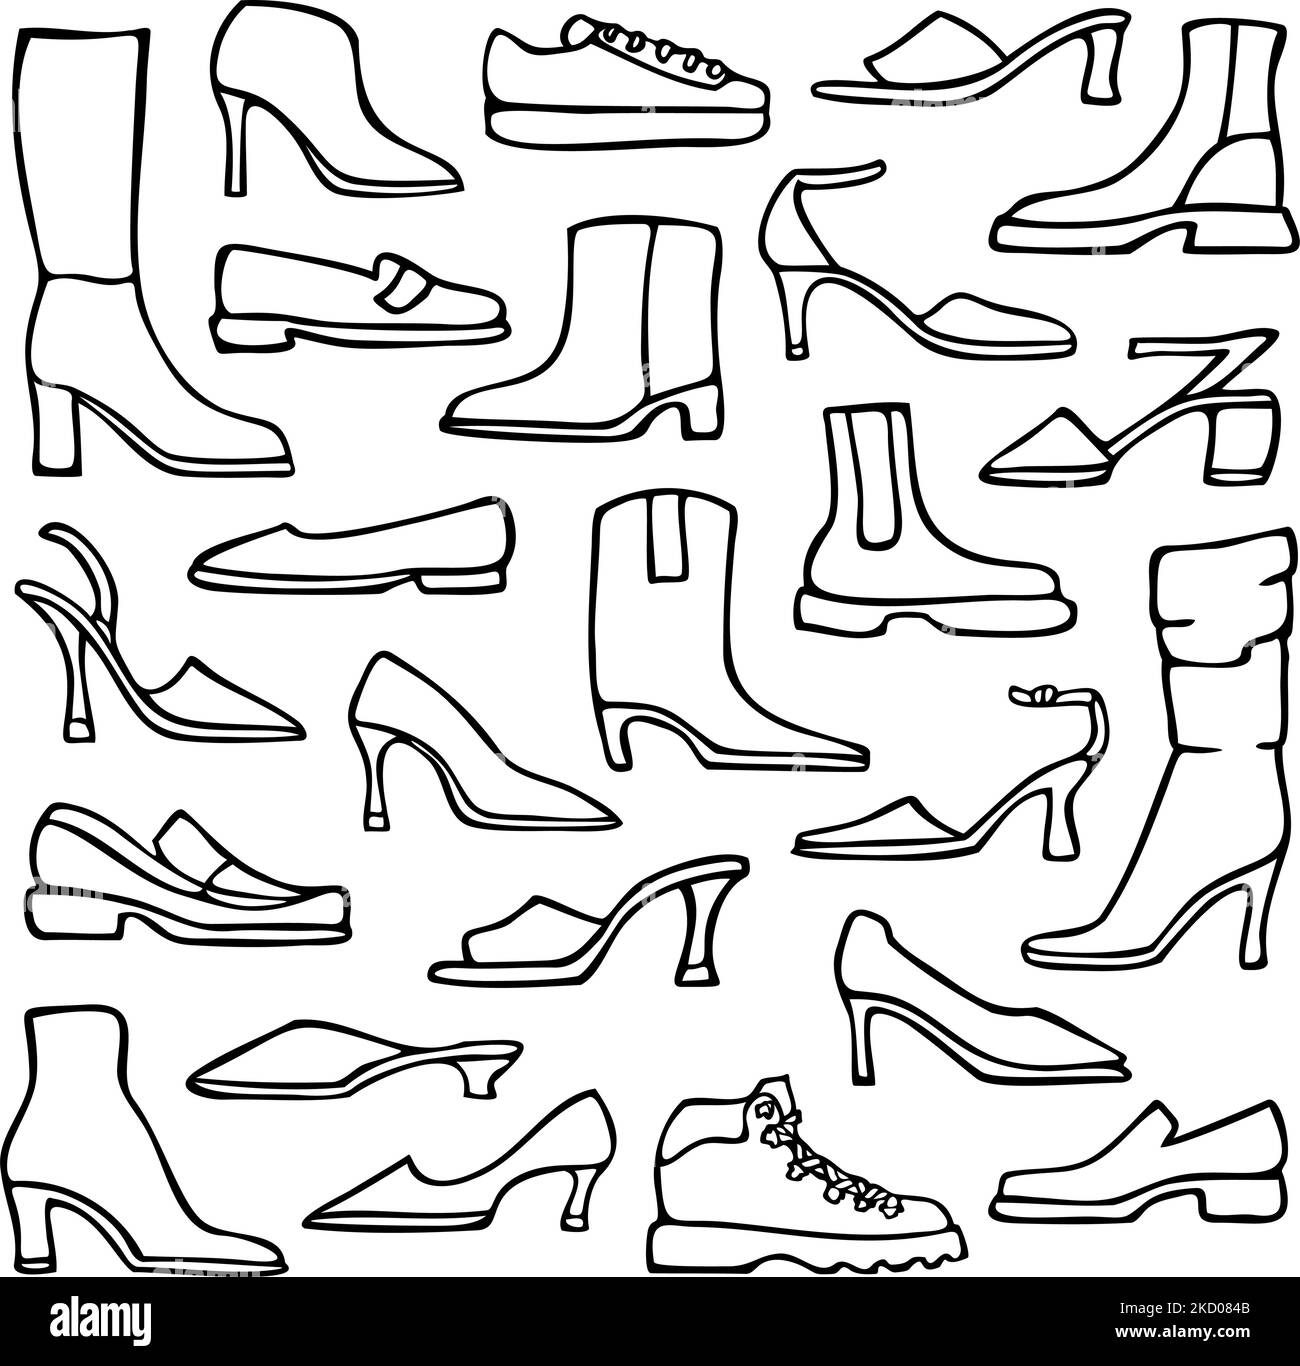 Vektor-Illustration mit Kollektion von Damenschuhen. Design für das ausmalen. Stock Vektor